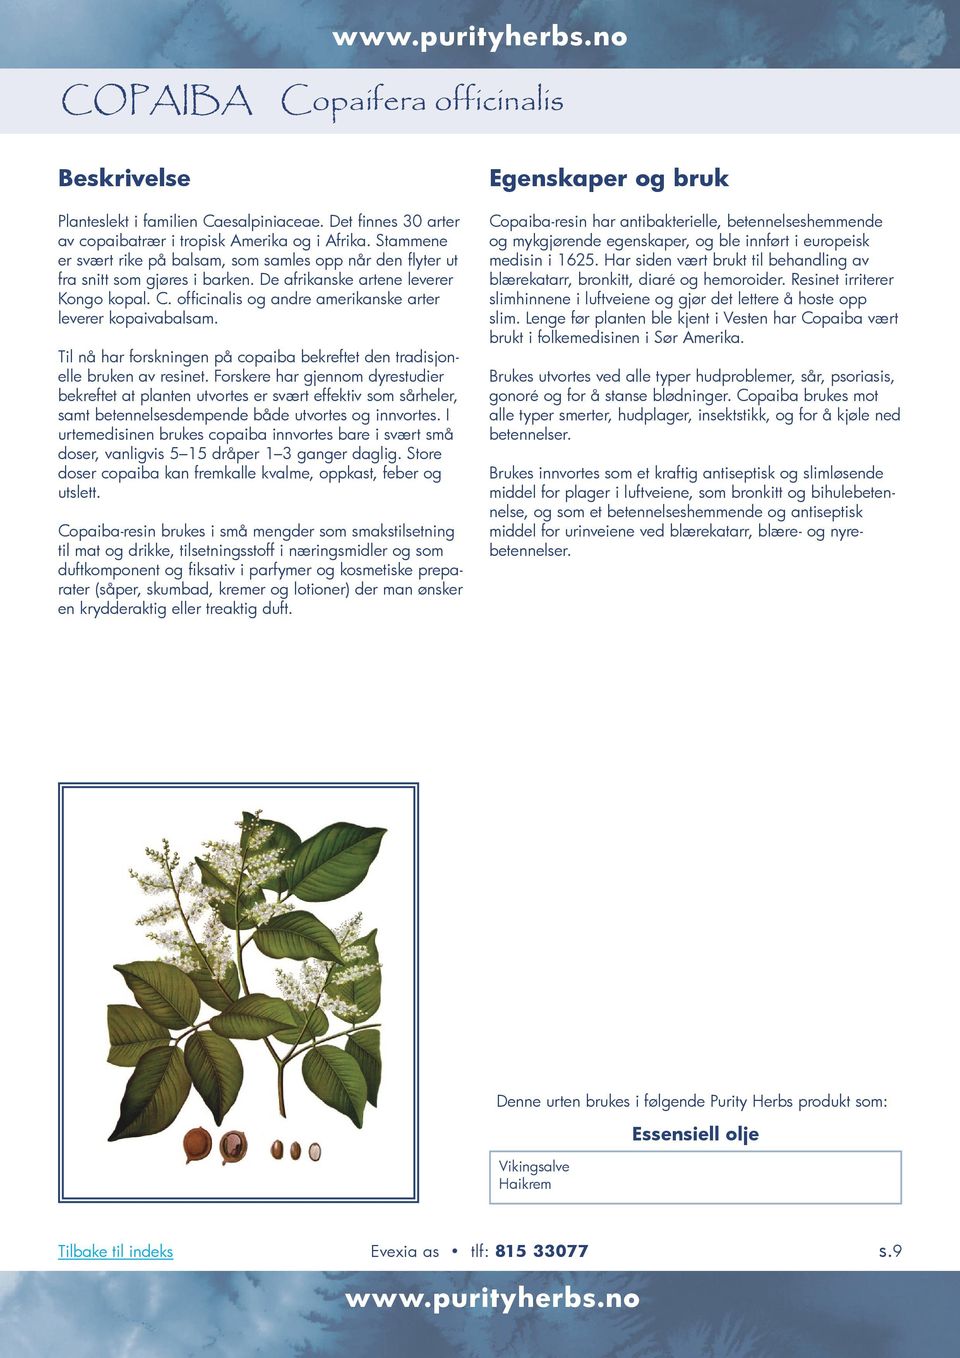 officinalis og andre amerikanske arter leverer kopaivabalsam. Til nå har forskningen på copaiba bekreftet den tradisjonelle bruken av resinet.